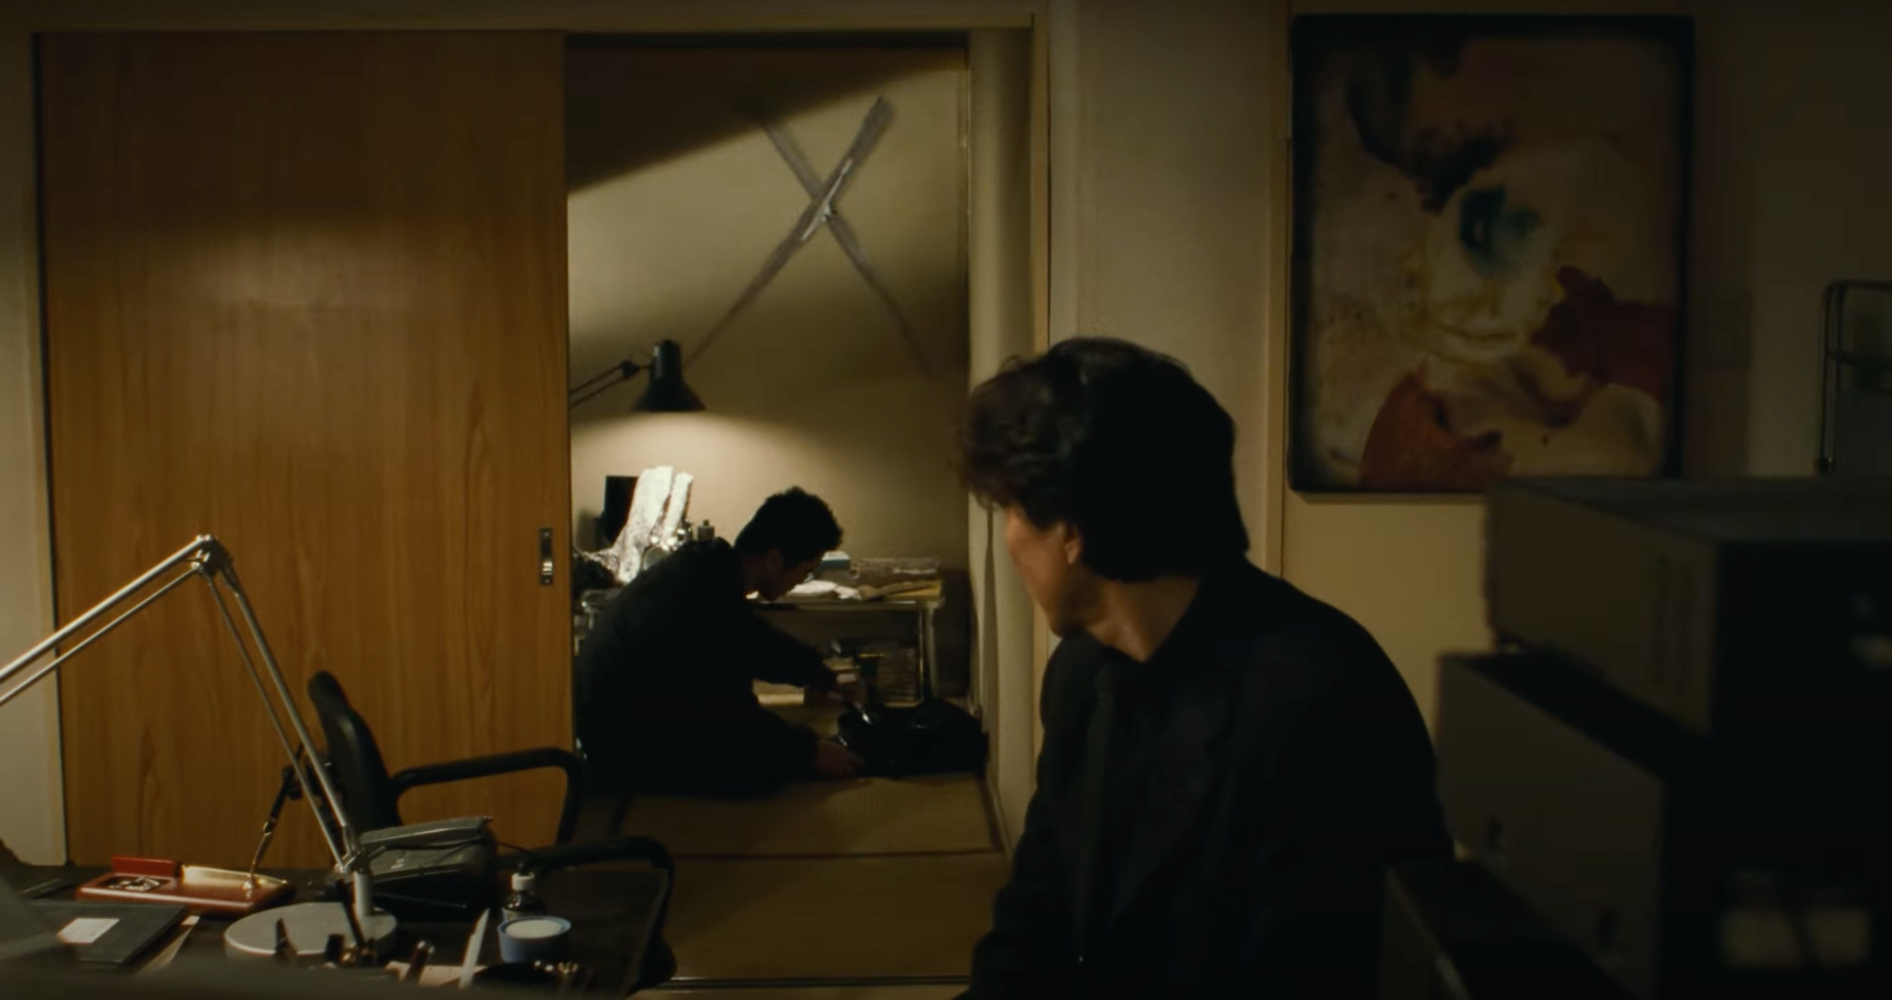 4K Trailer for Kiyoshi Kurosawa’s Cure Resurrects a Masterpiece